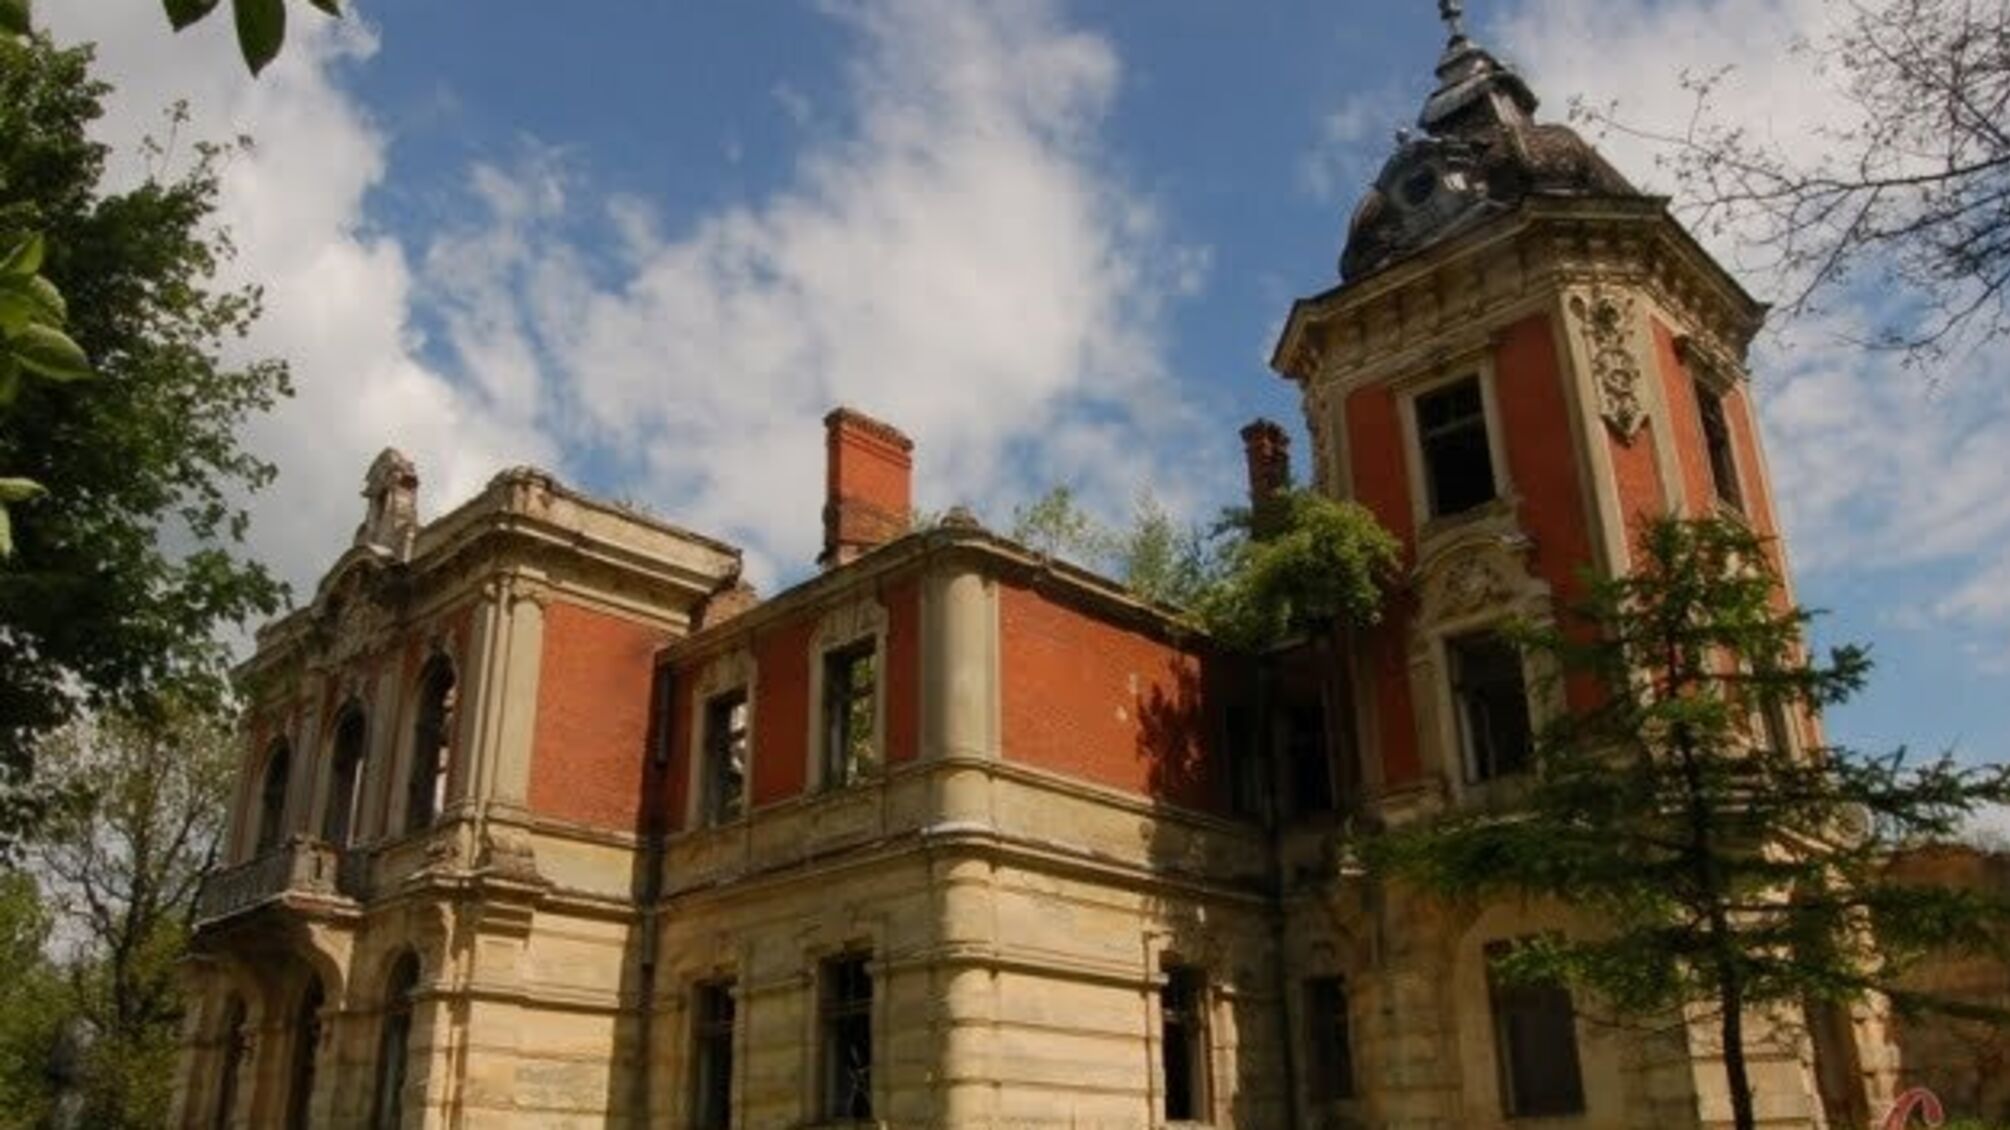 Тартаківський палац на Львівщині відкривають для екскурсантів